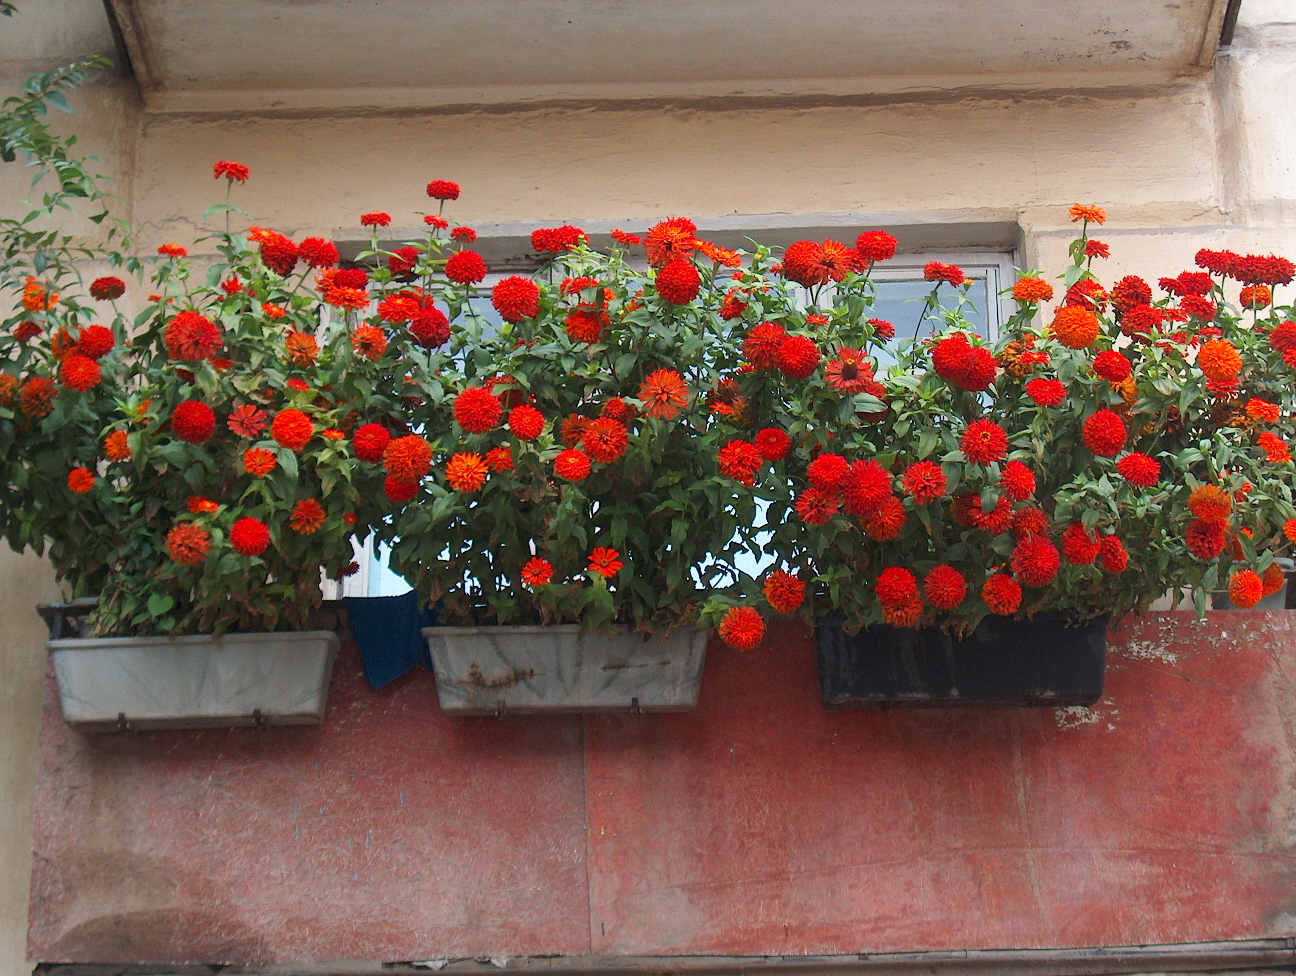 fiori luminosi all'interno del balcone sull'esempio di architravi